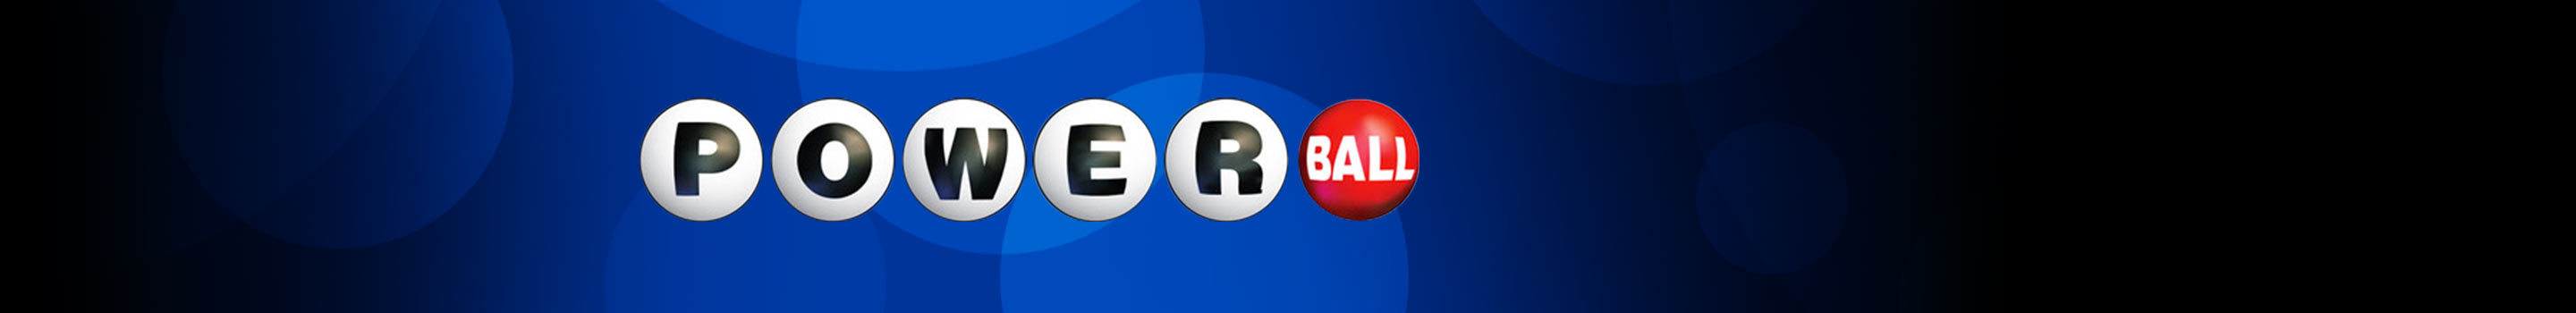 Powerball - die größte Lotterie der Welt